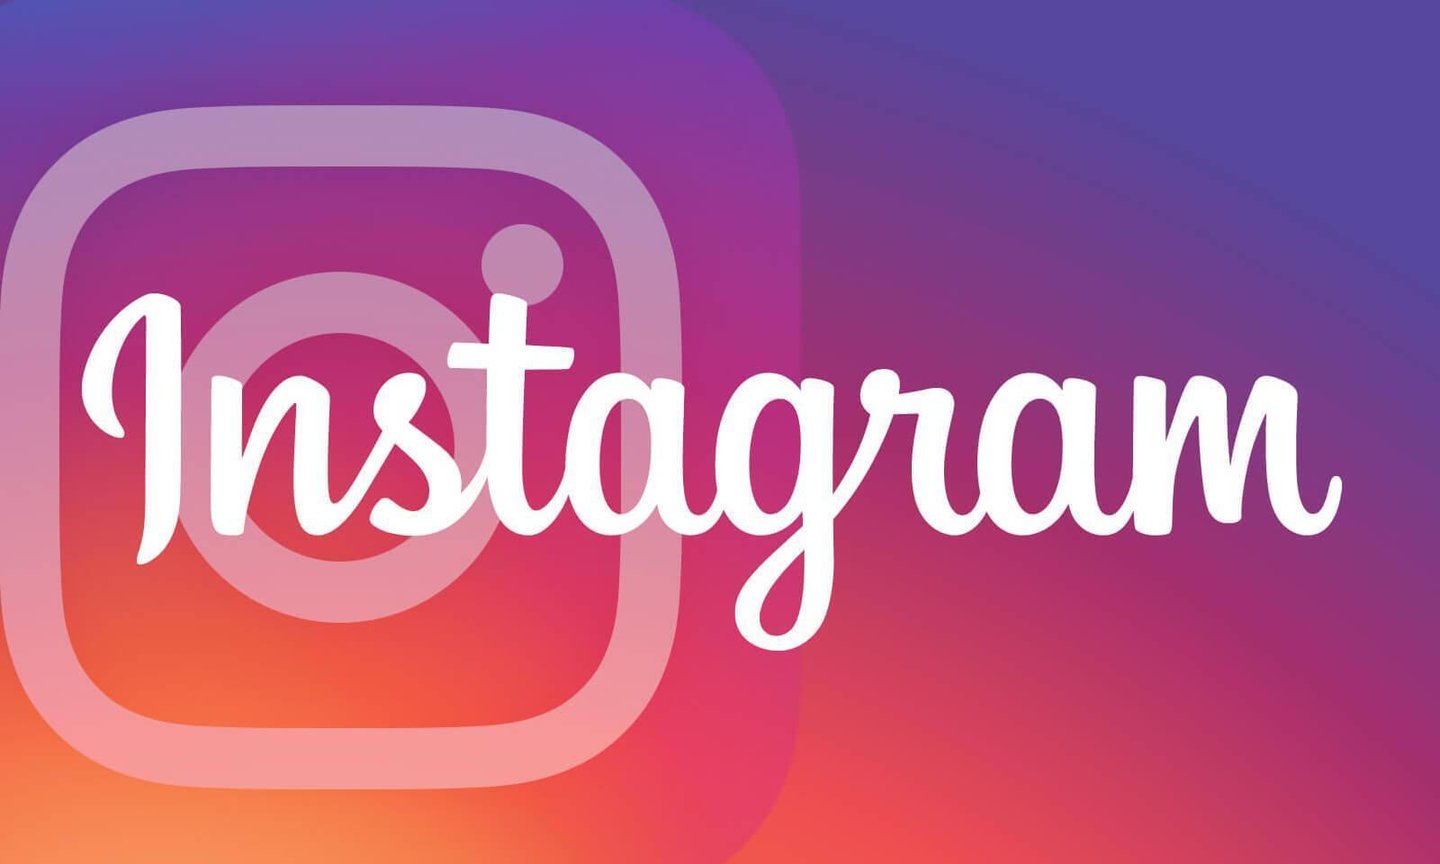 Instagram'da Gönderi Zamanlama Nasıl Yapılır?